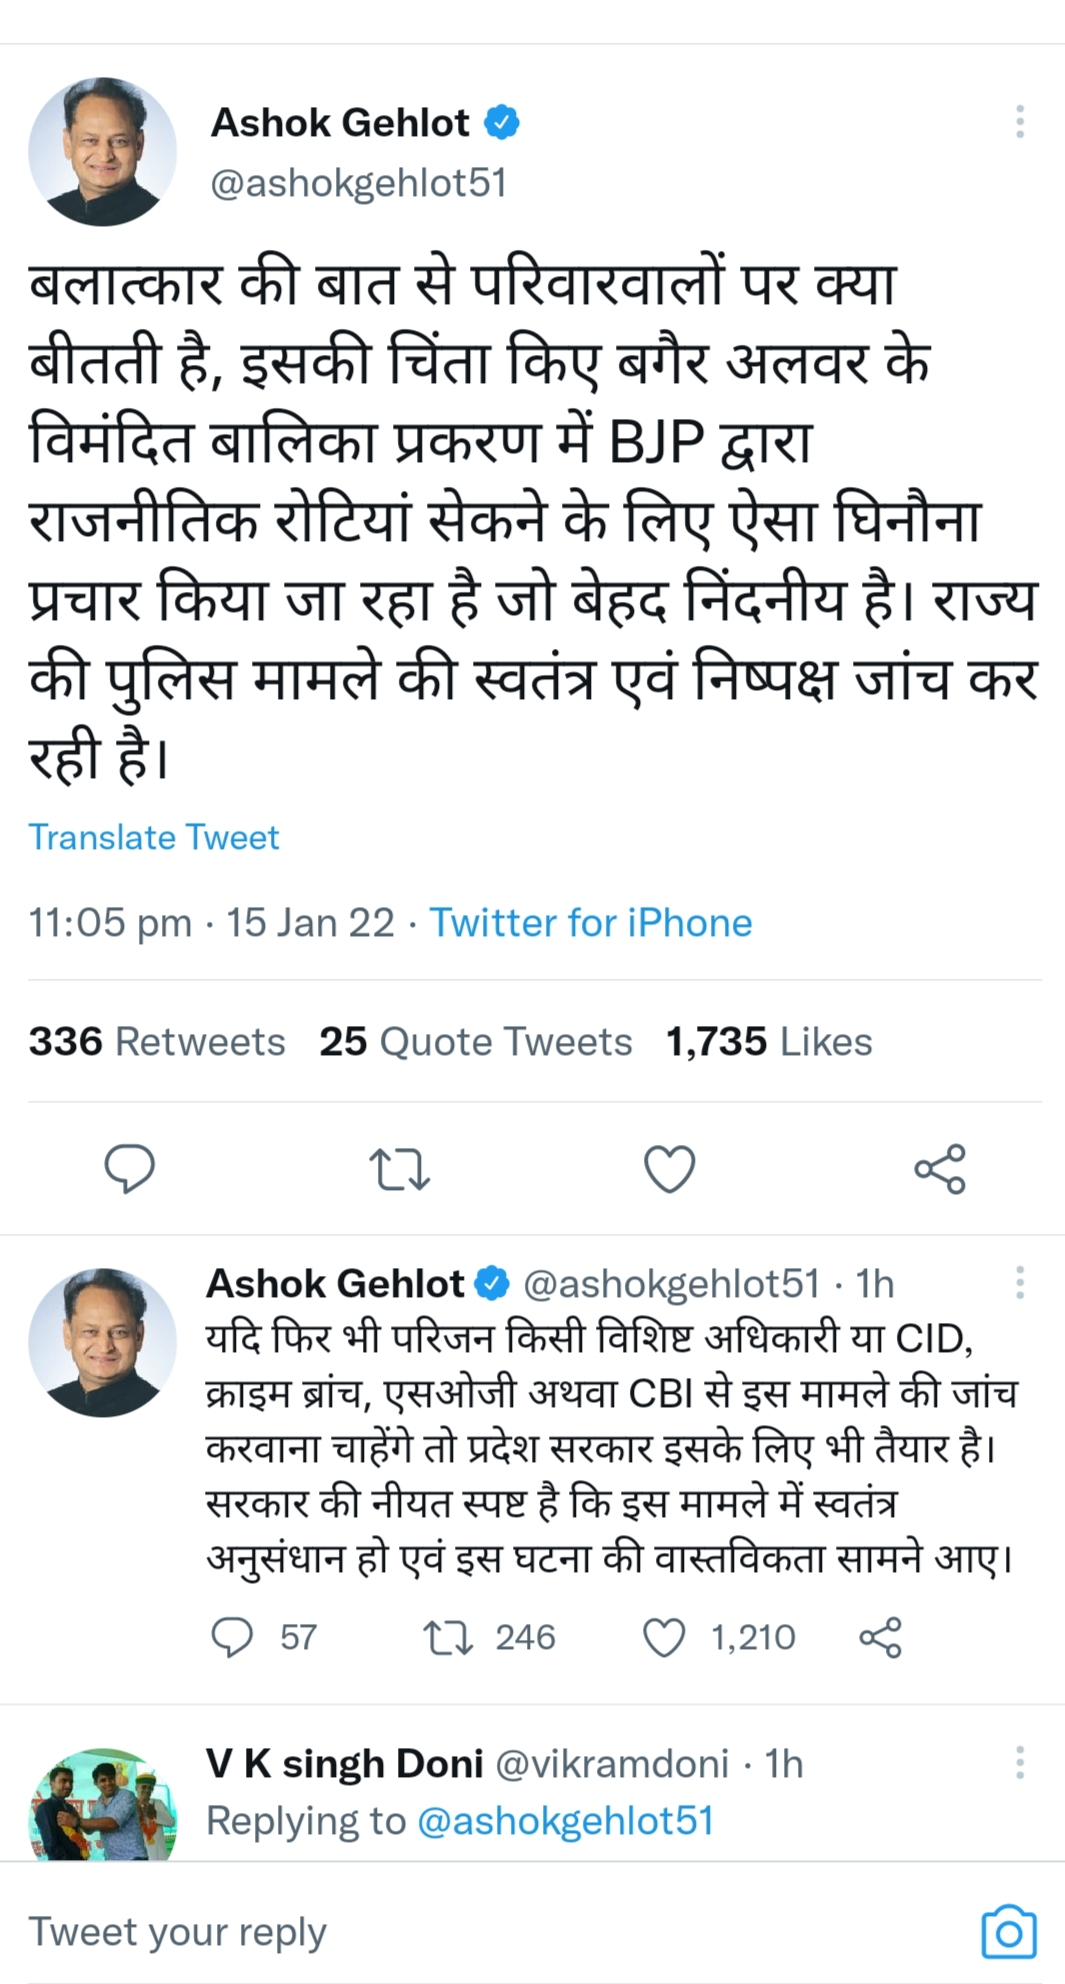 CM ने अलवर मामले में किया ट्वीट भाजपा को कोसा